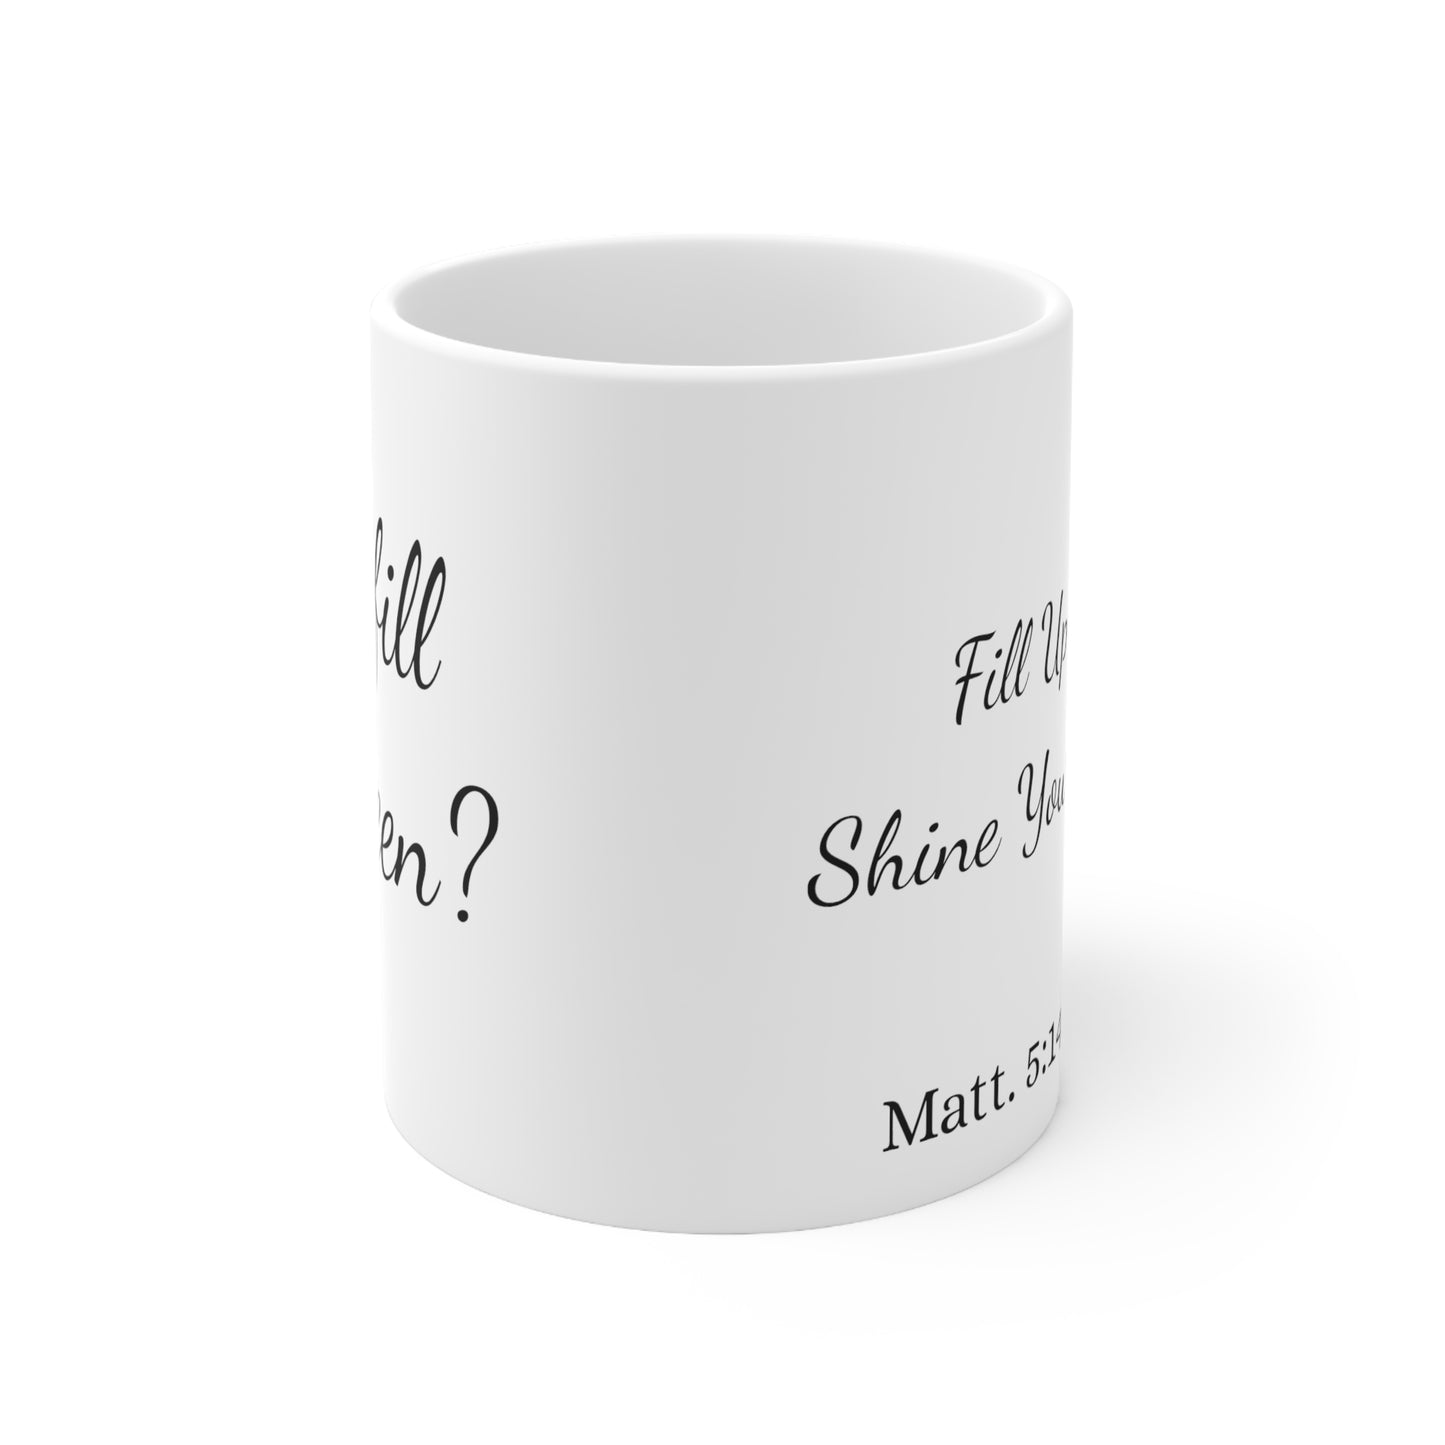 Queen Shine Your Light Mug-Matt 5